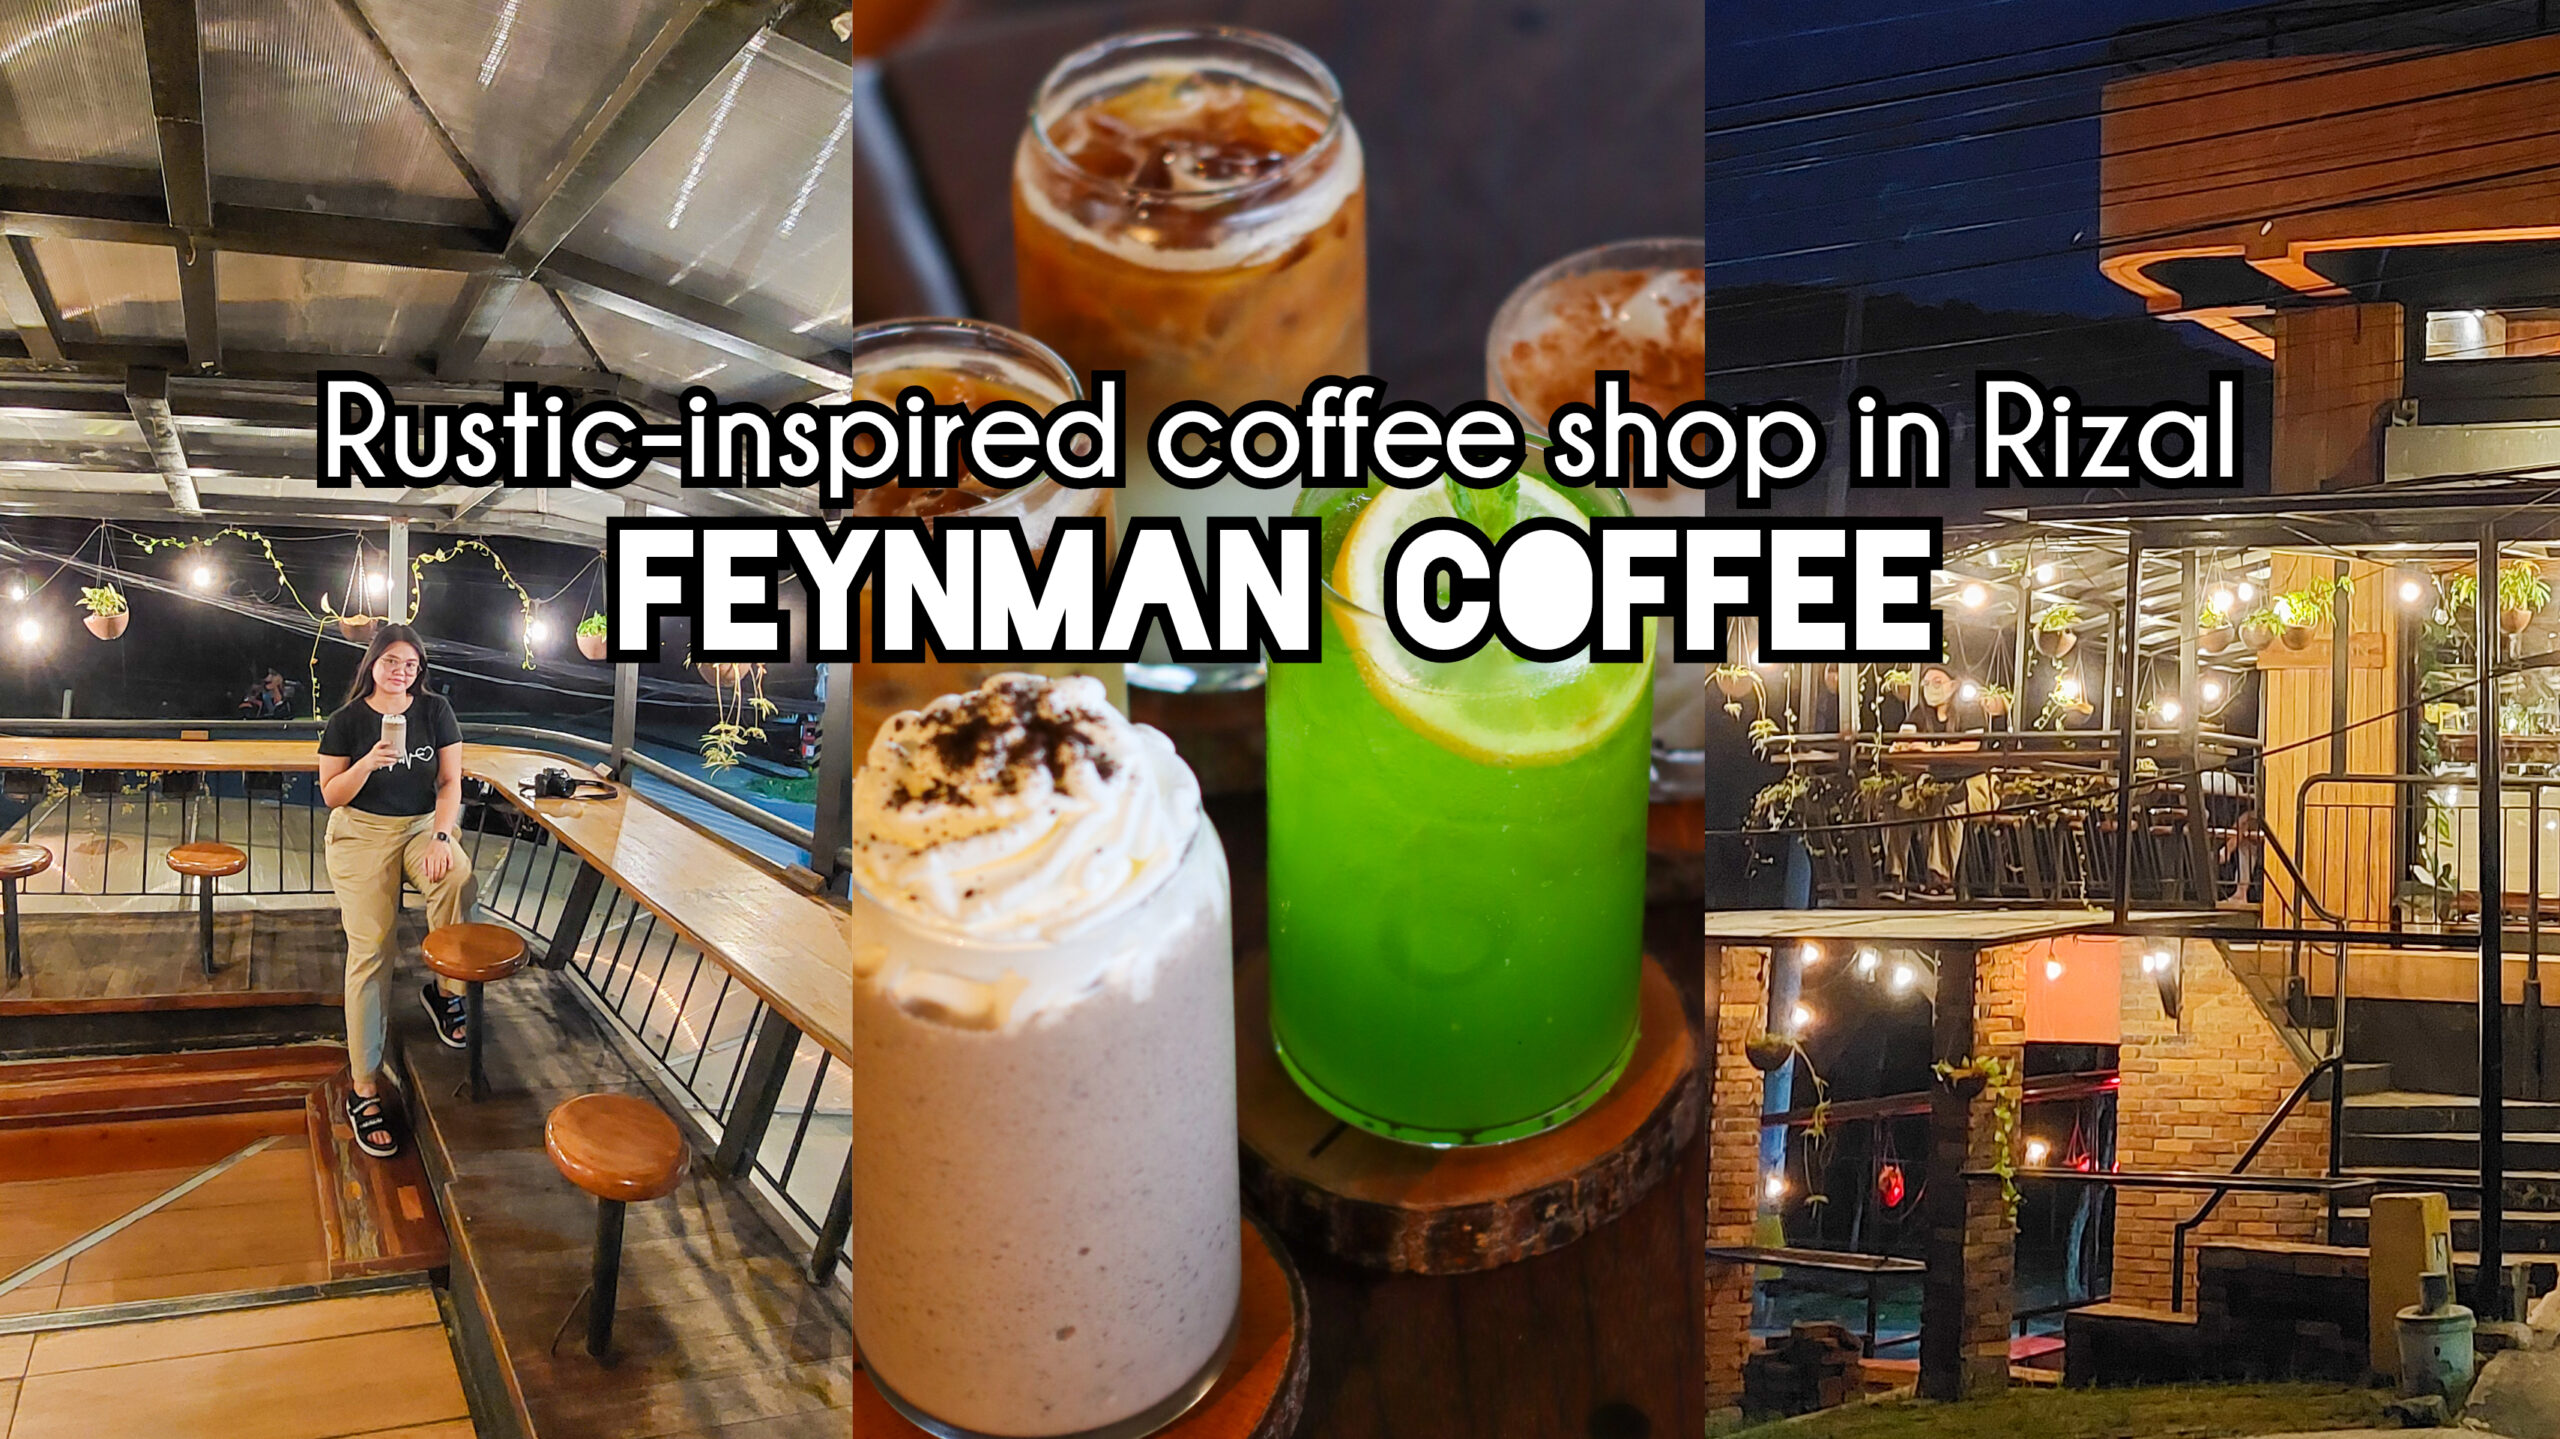 feynman coffee